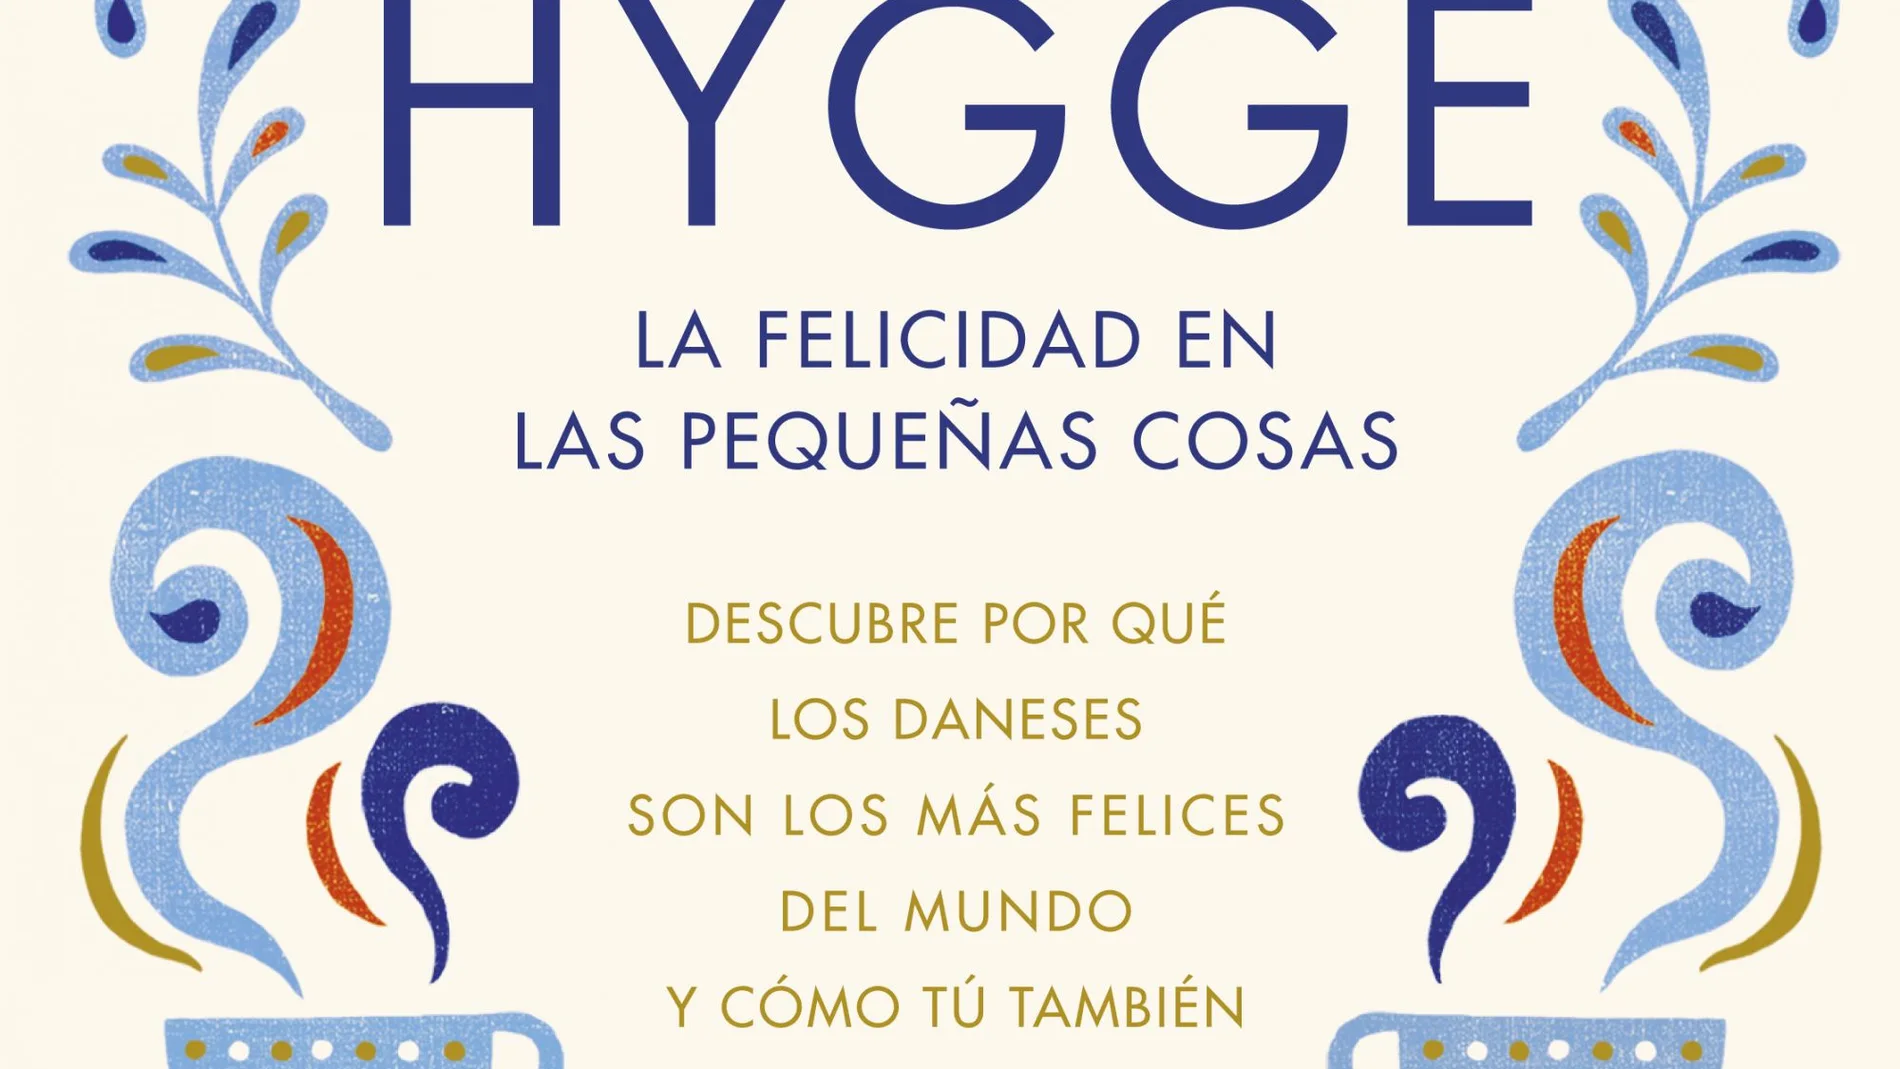 Hygge, la felicidad en las pequeñas cosas